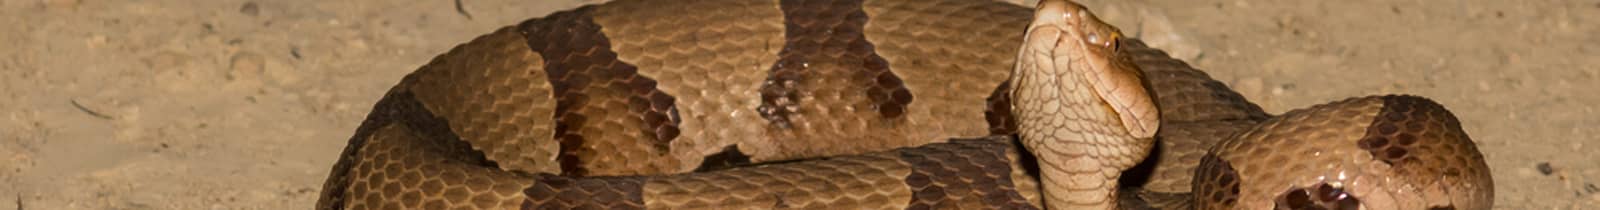 Snake removal pest control Nashville, TN